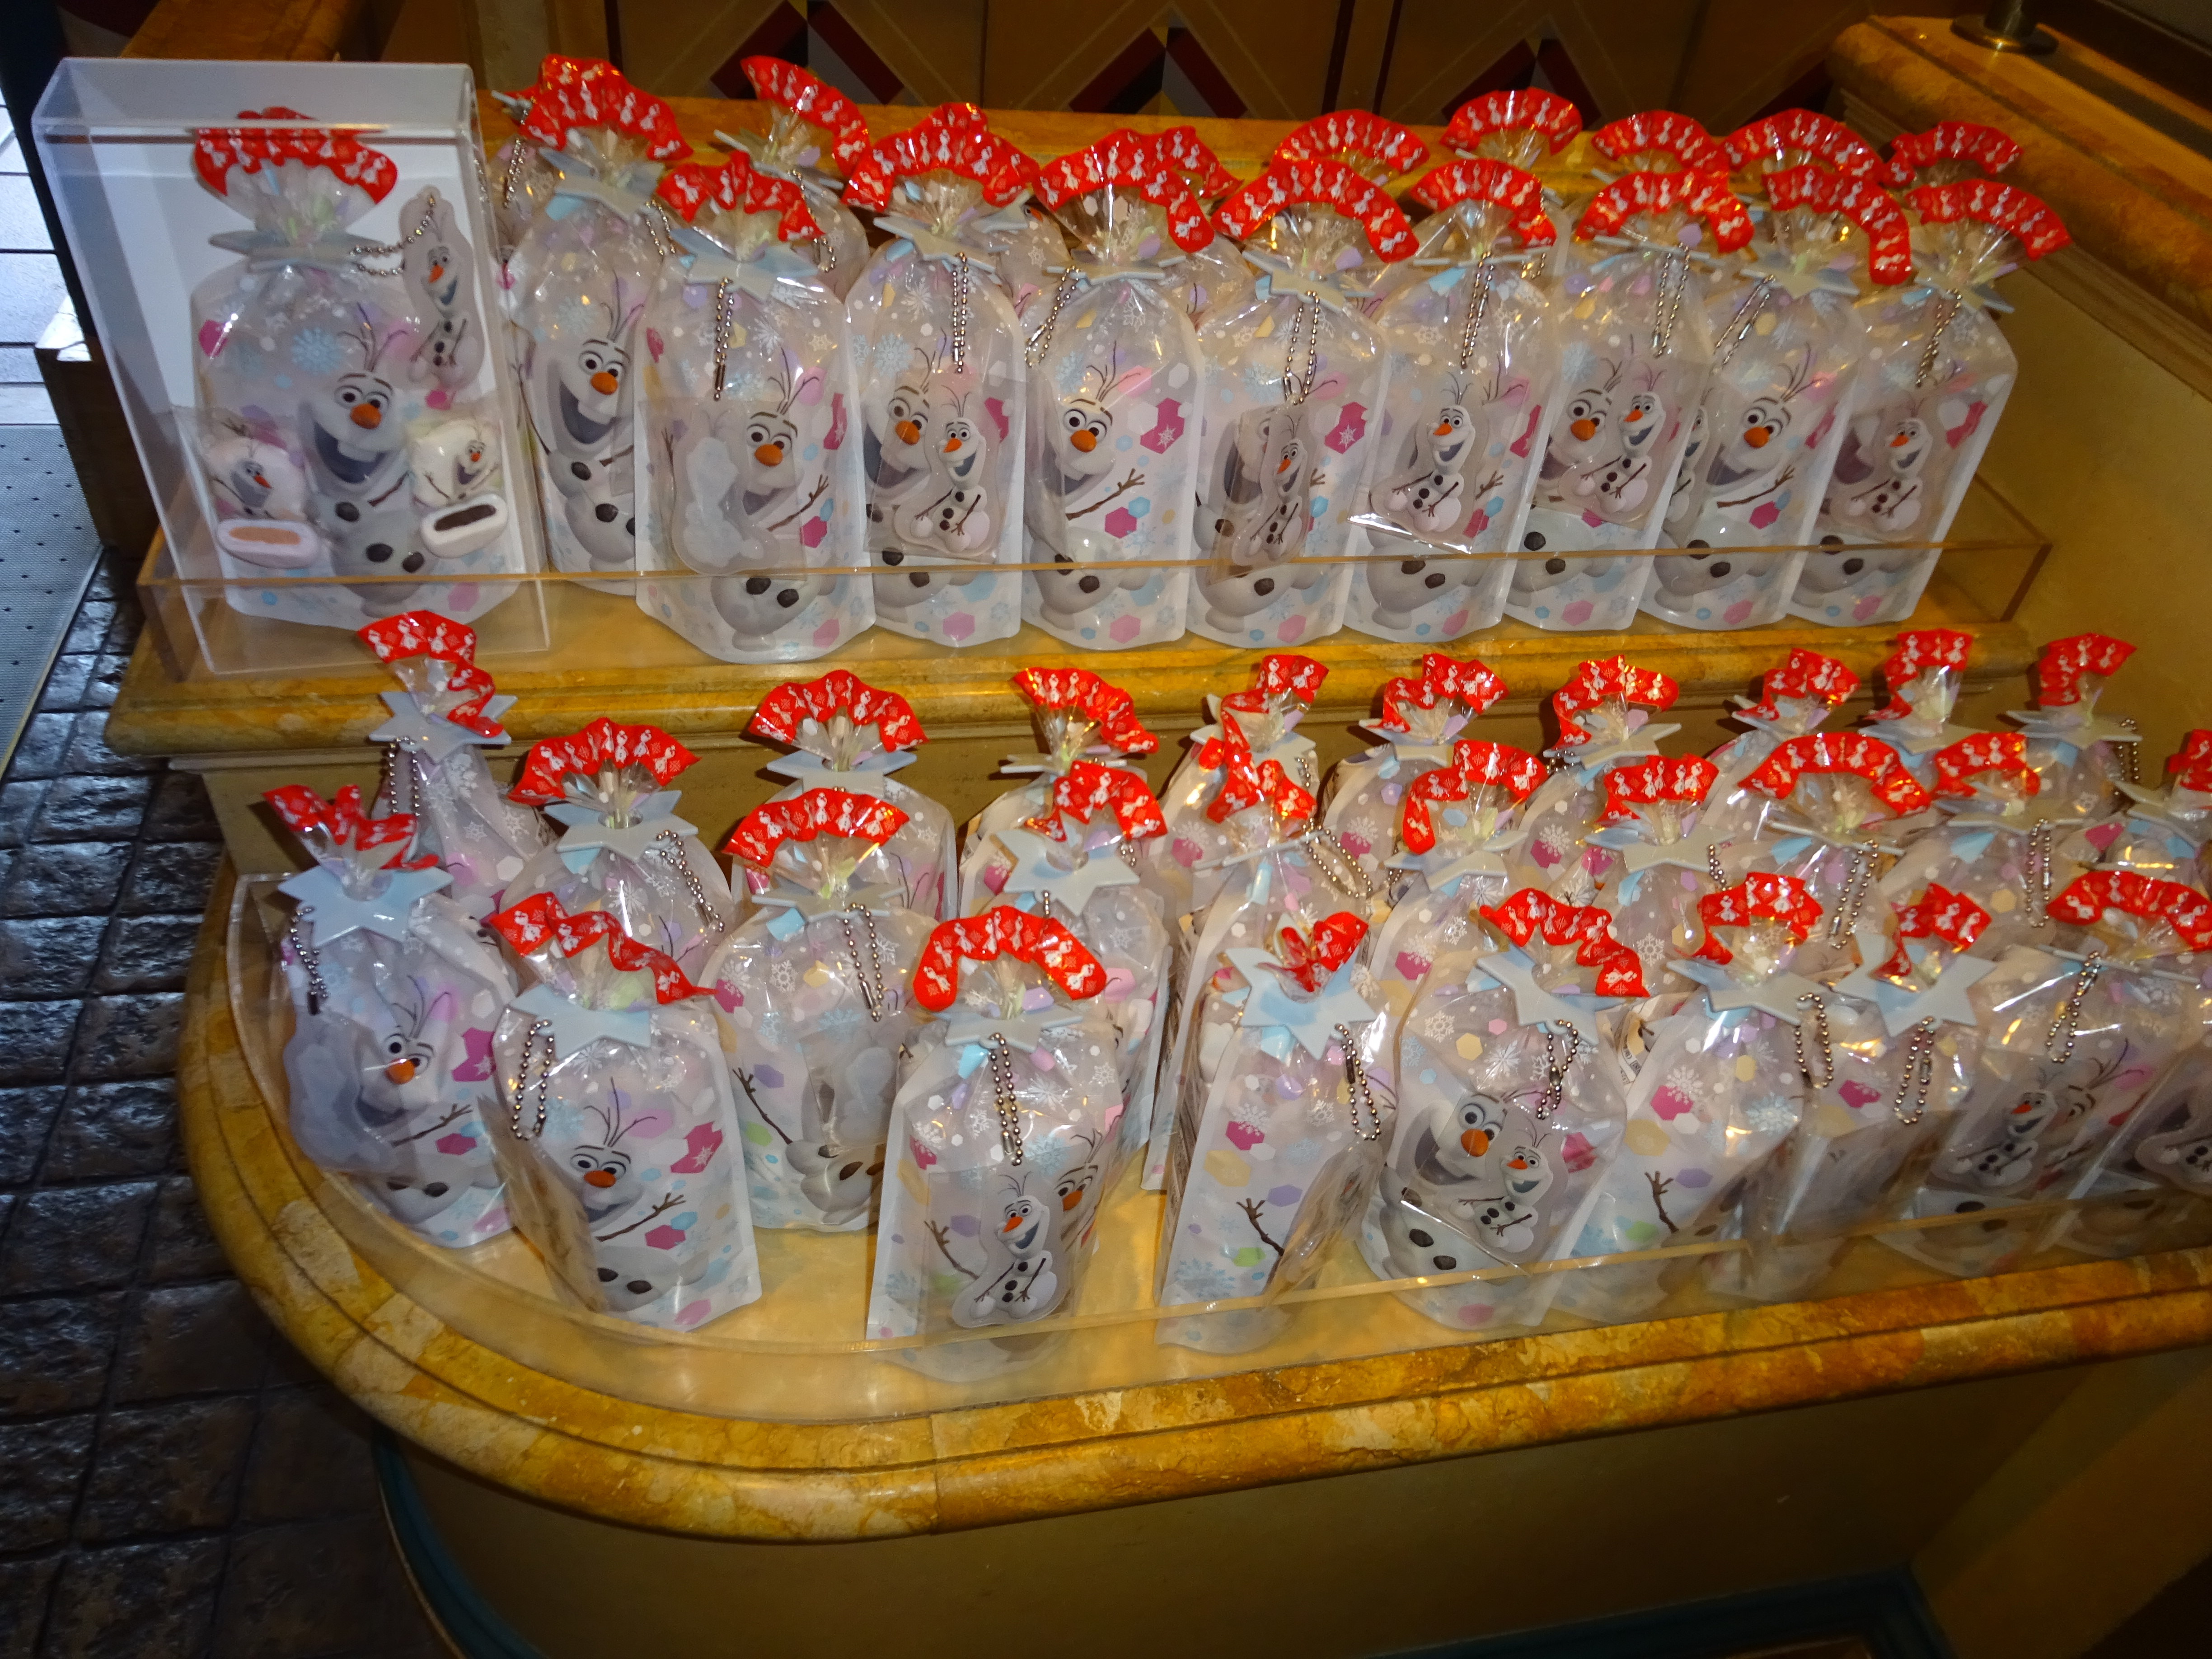 ディズニリゾート15 ランドとシーでお土産で買いたいお菓子のご紹介 人気のディズニープリンセス アリエル モチーフのお菓子もご紹介しております Woocディズニーイベント グッズ情報ブログ